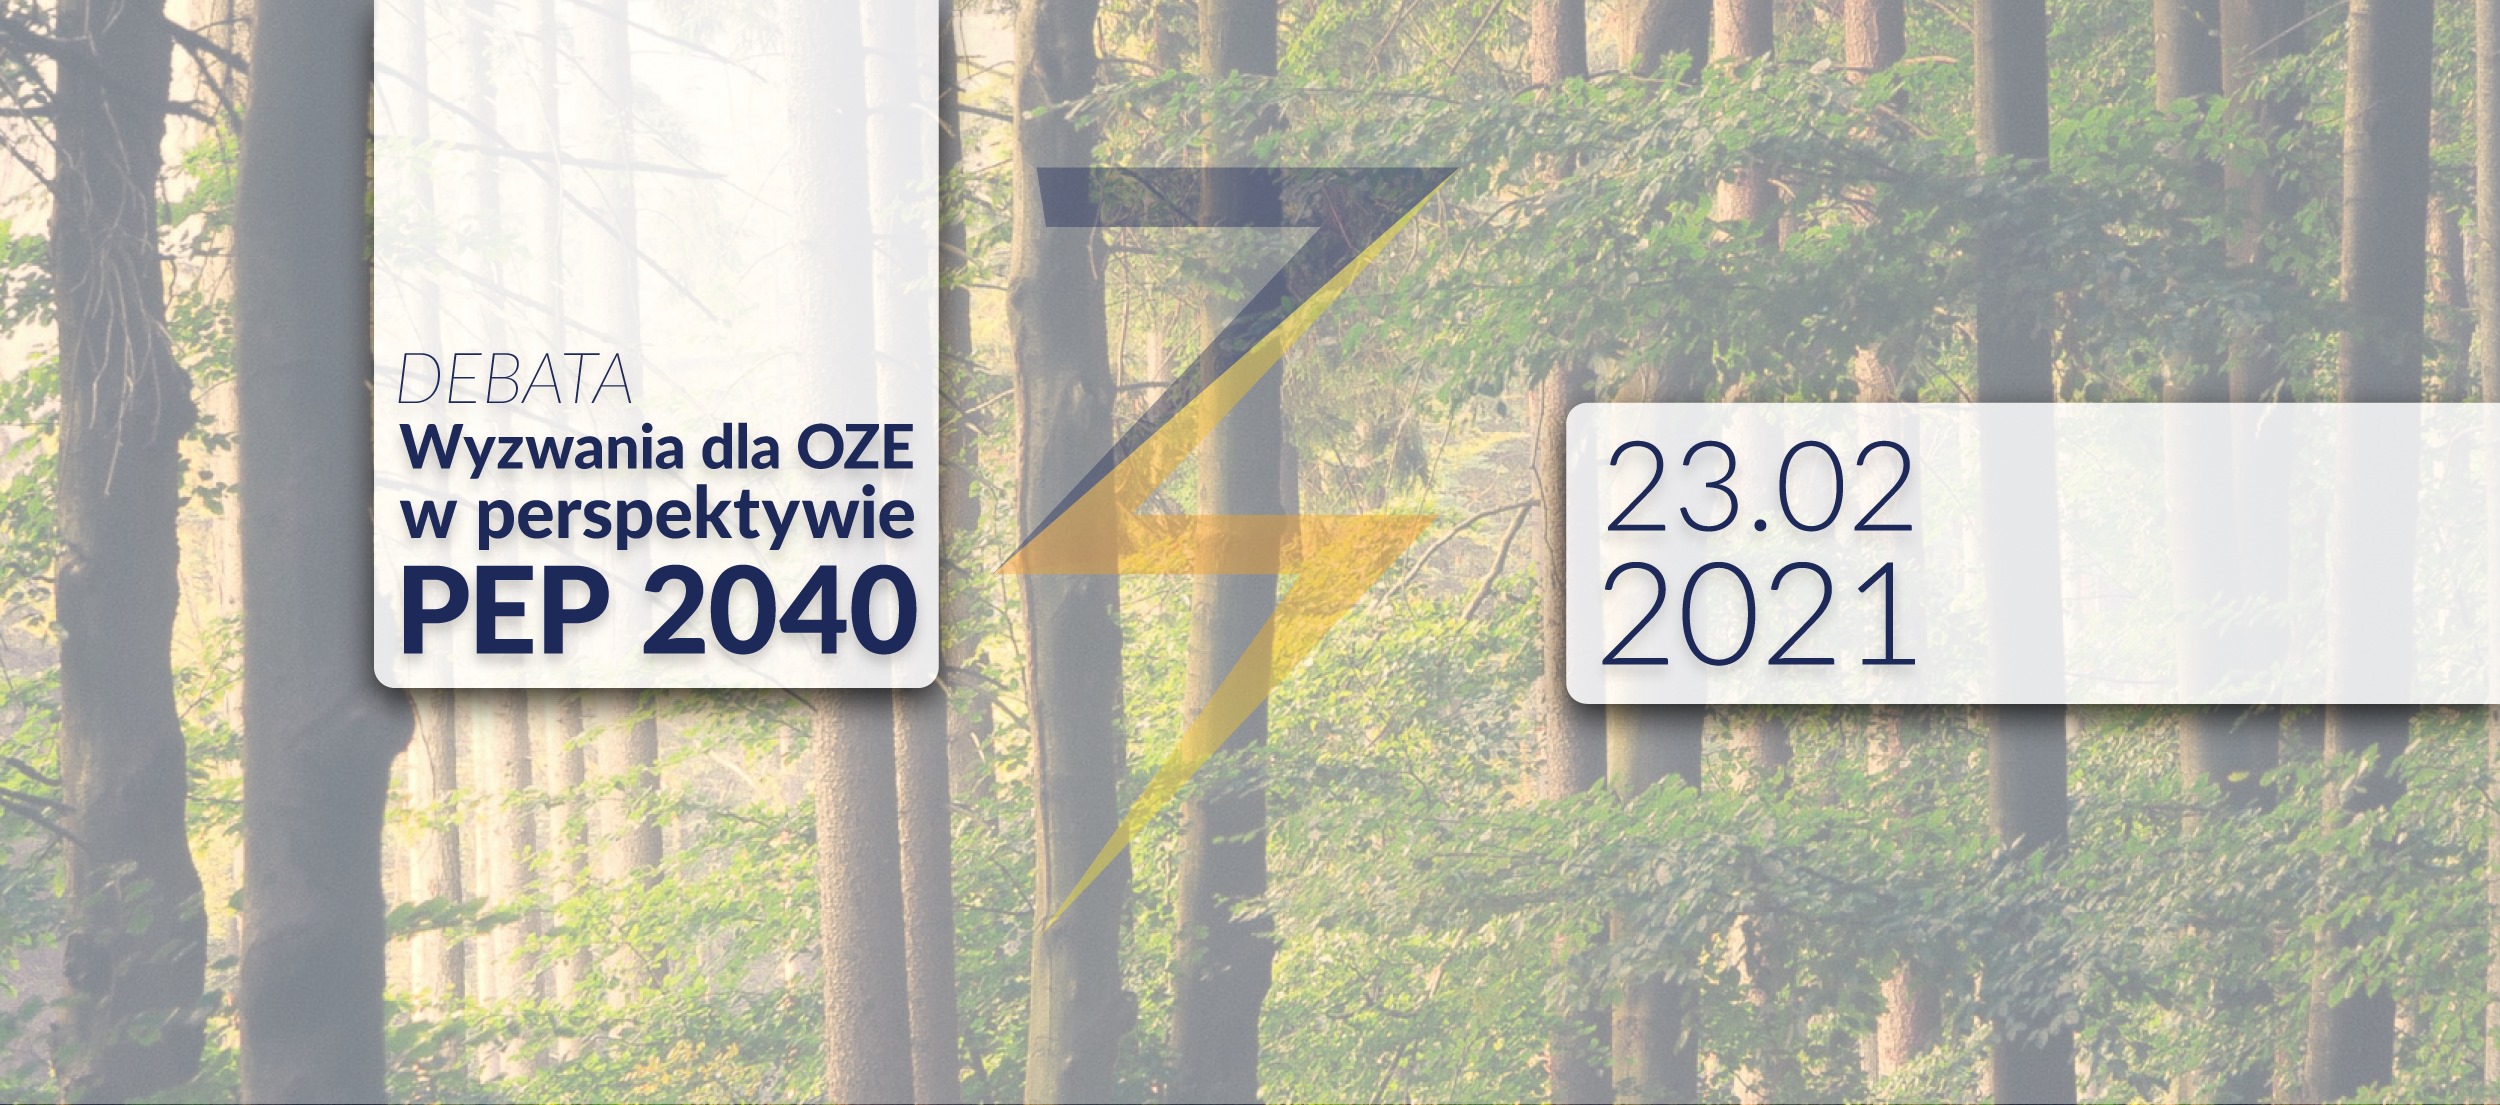 Wyzwania dla OZE w perspektywie PEP 2040 – Debata